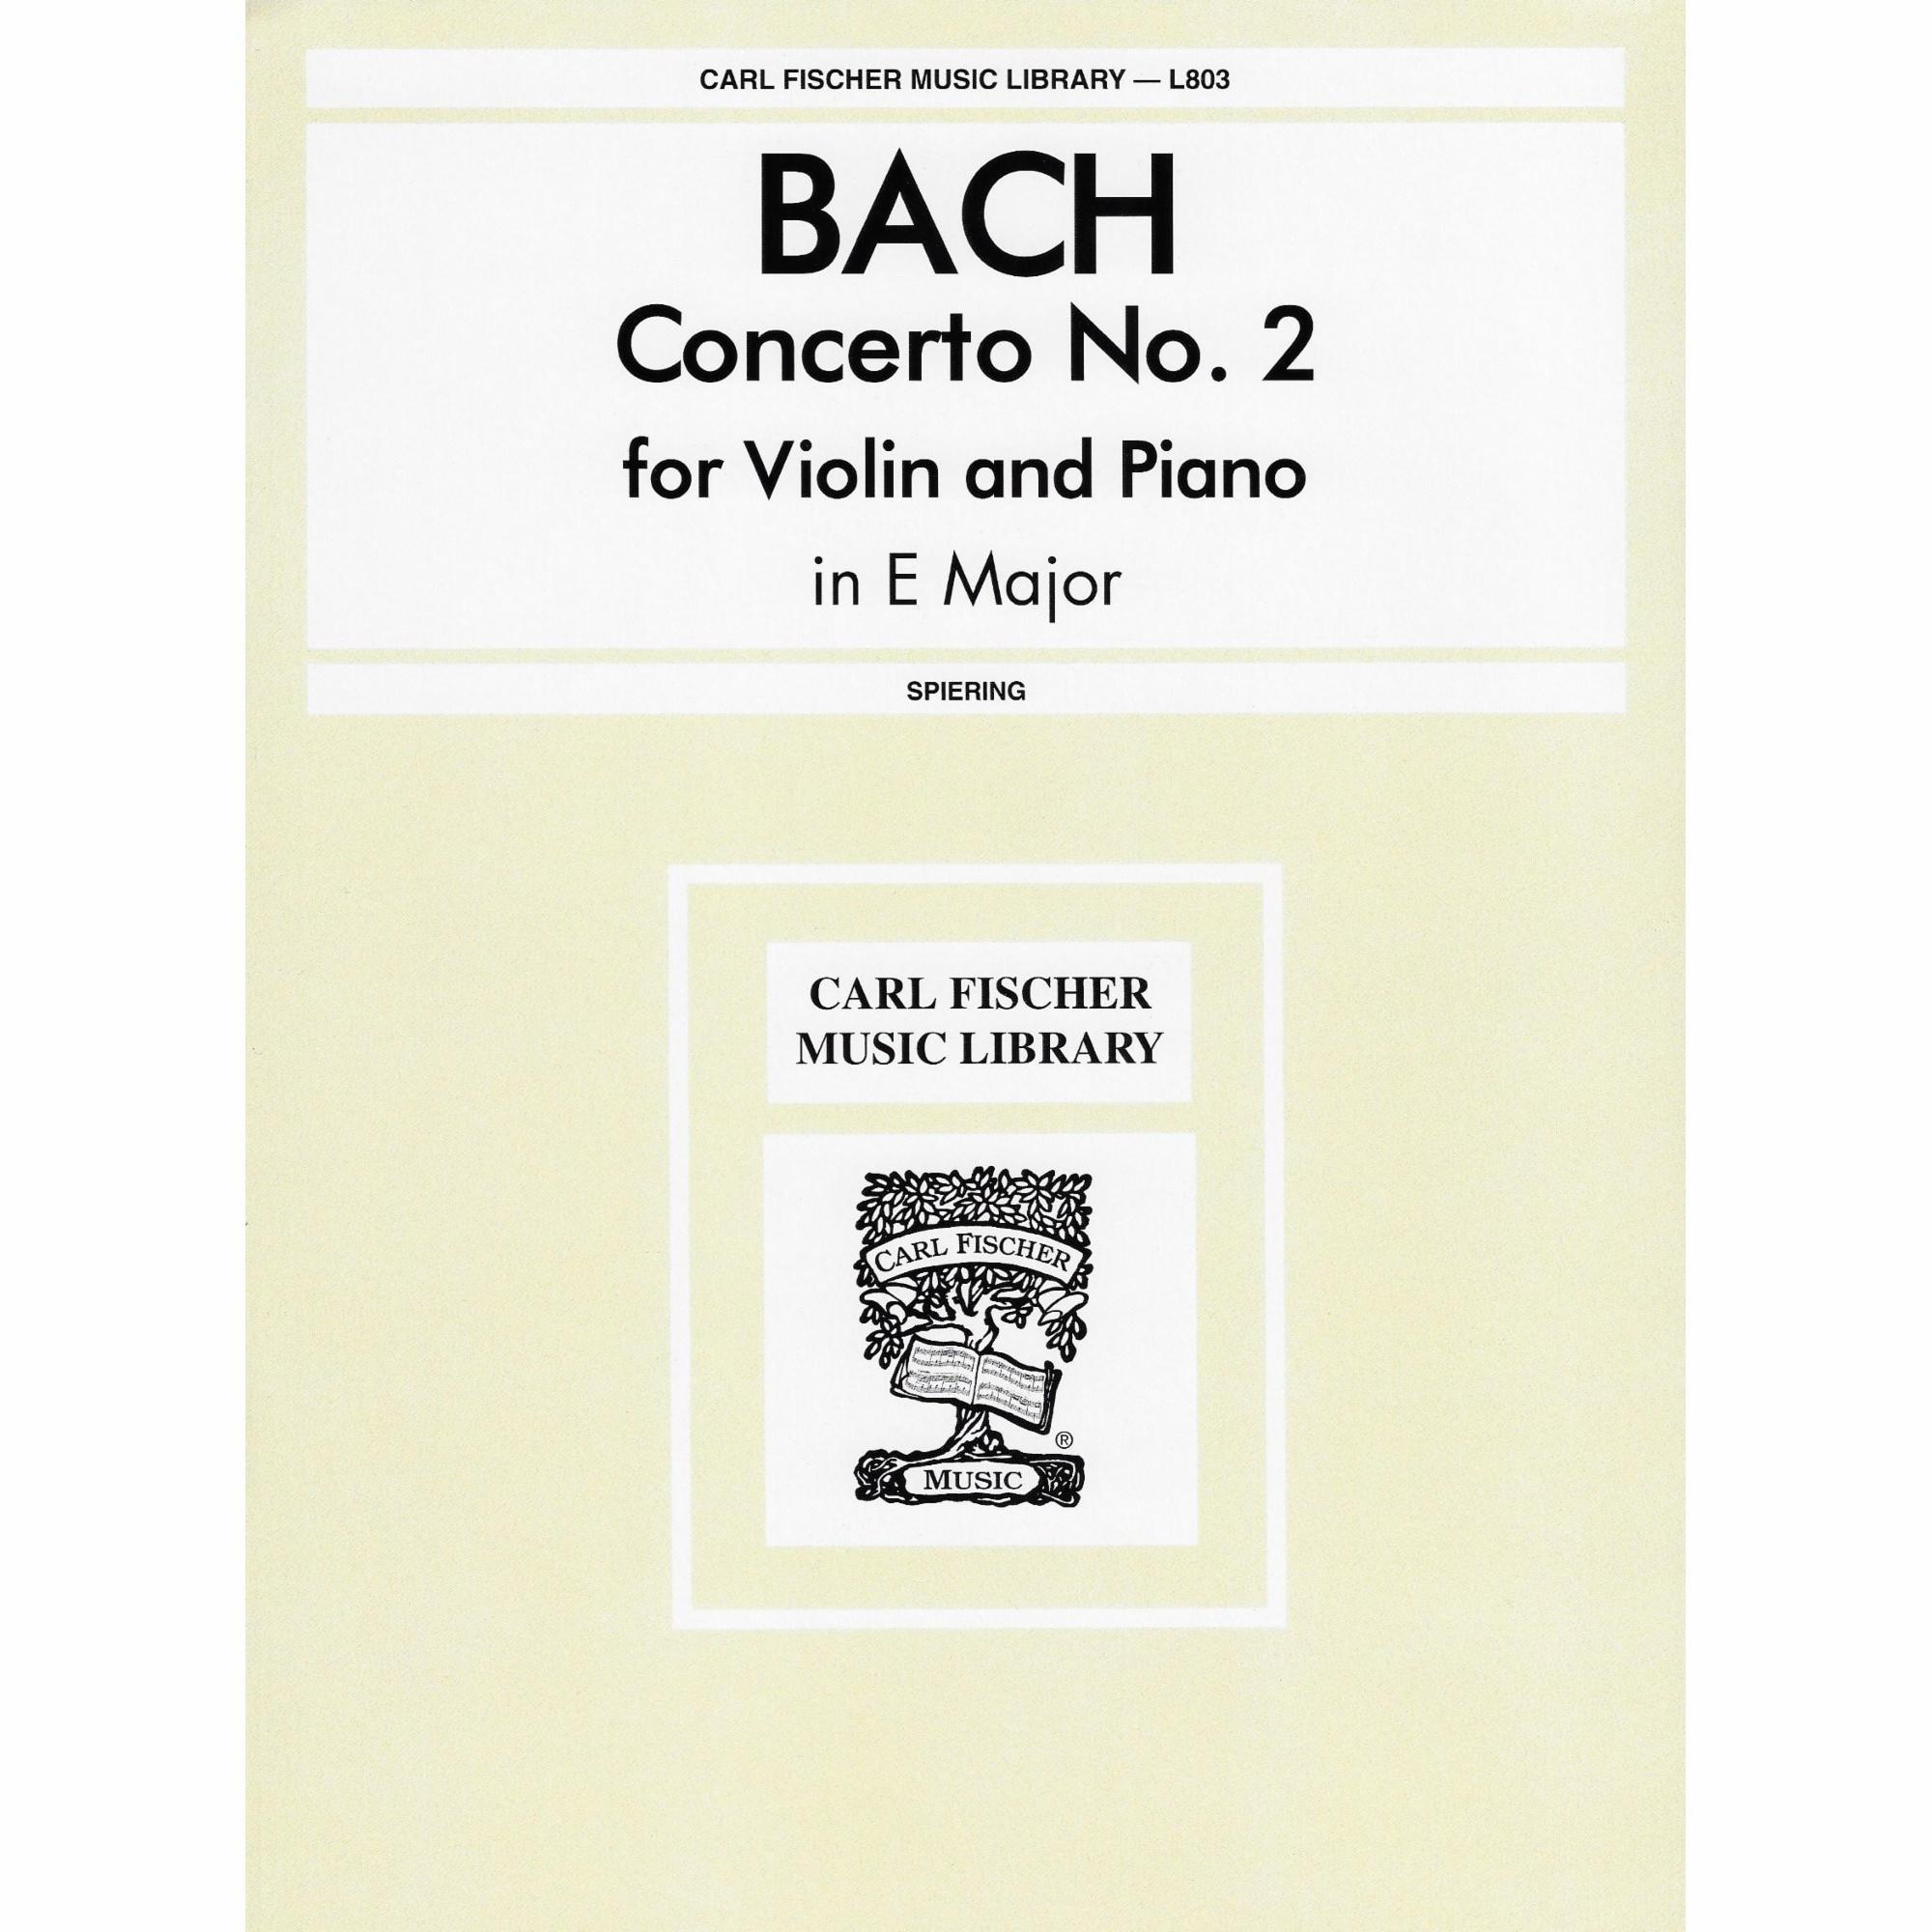 Bach -- Concerto No. 2 in E Major for Violin and Piano